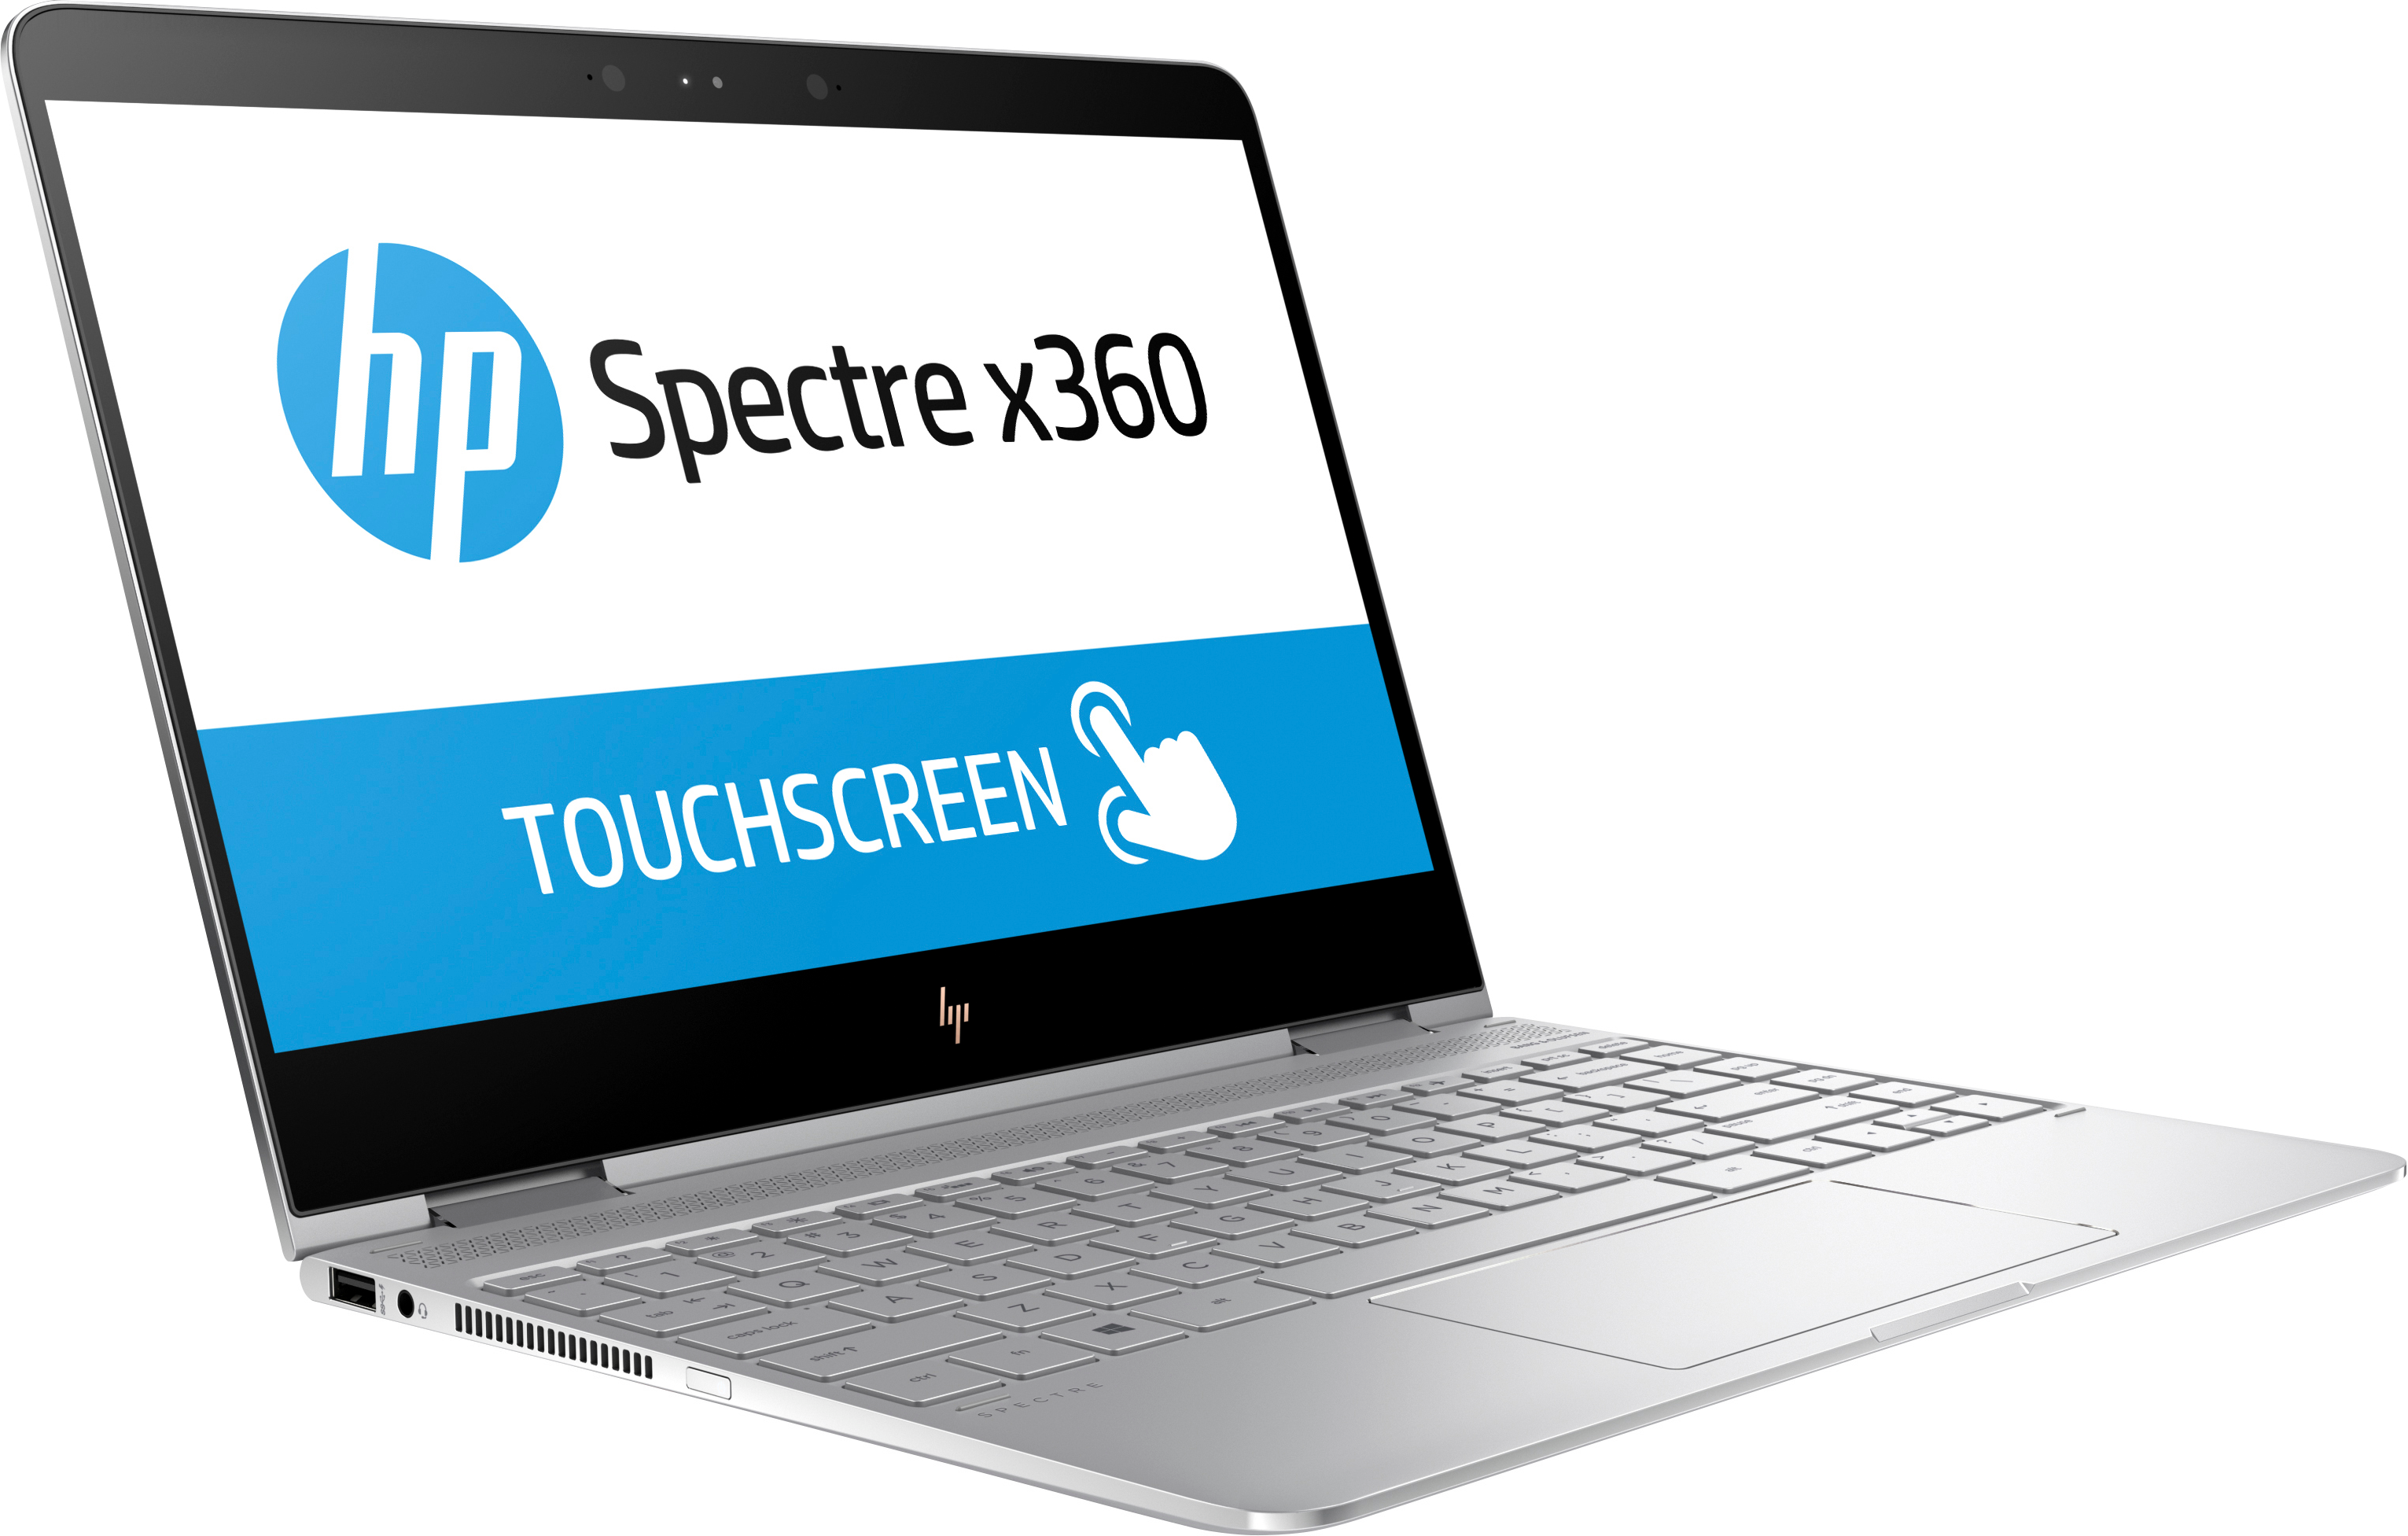 H P Spectrex360 Touchscreen Laptop PNG